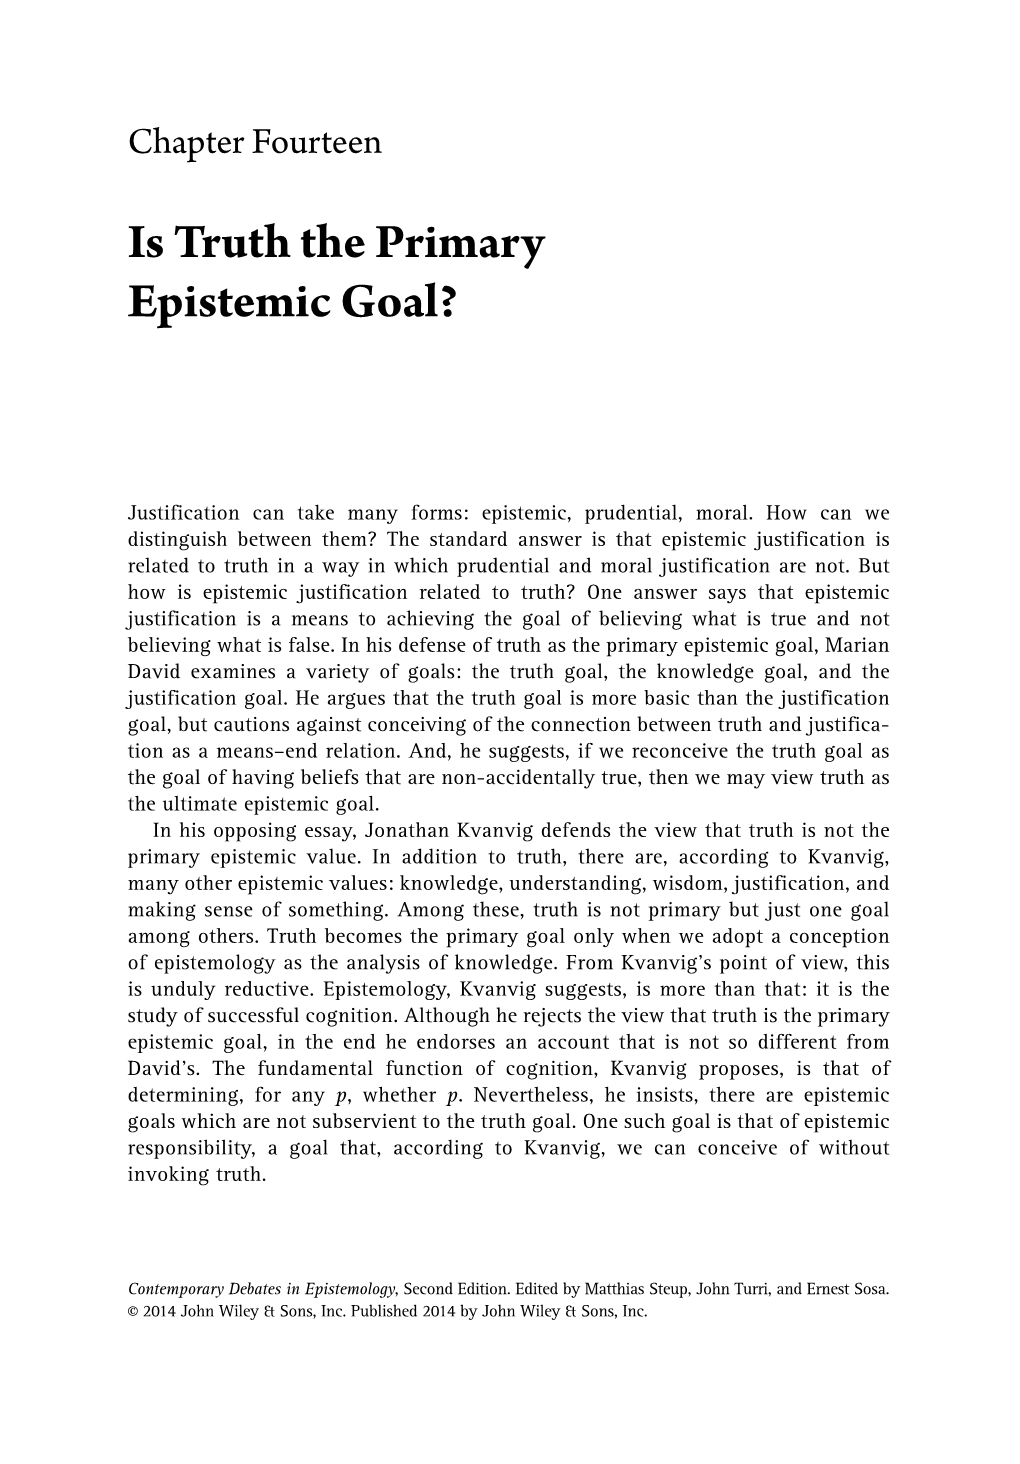 Contemporary Debates in Epistemology, Second Edition